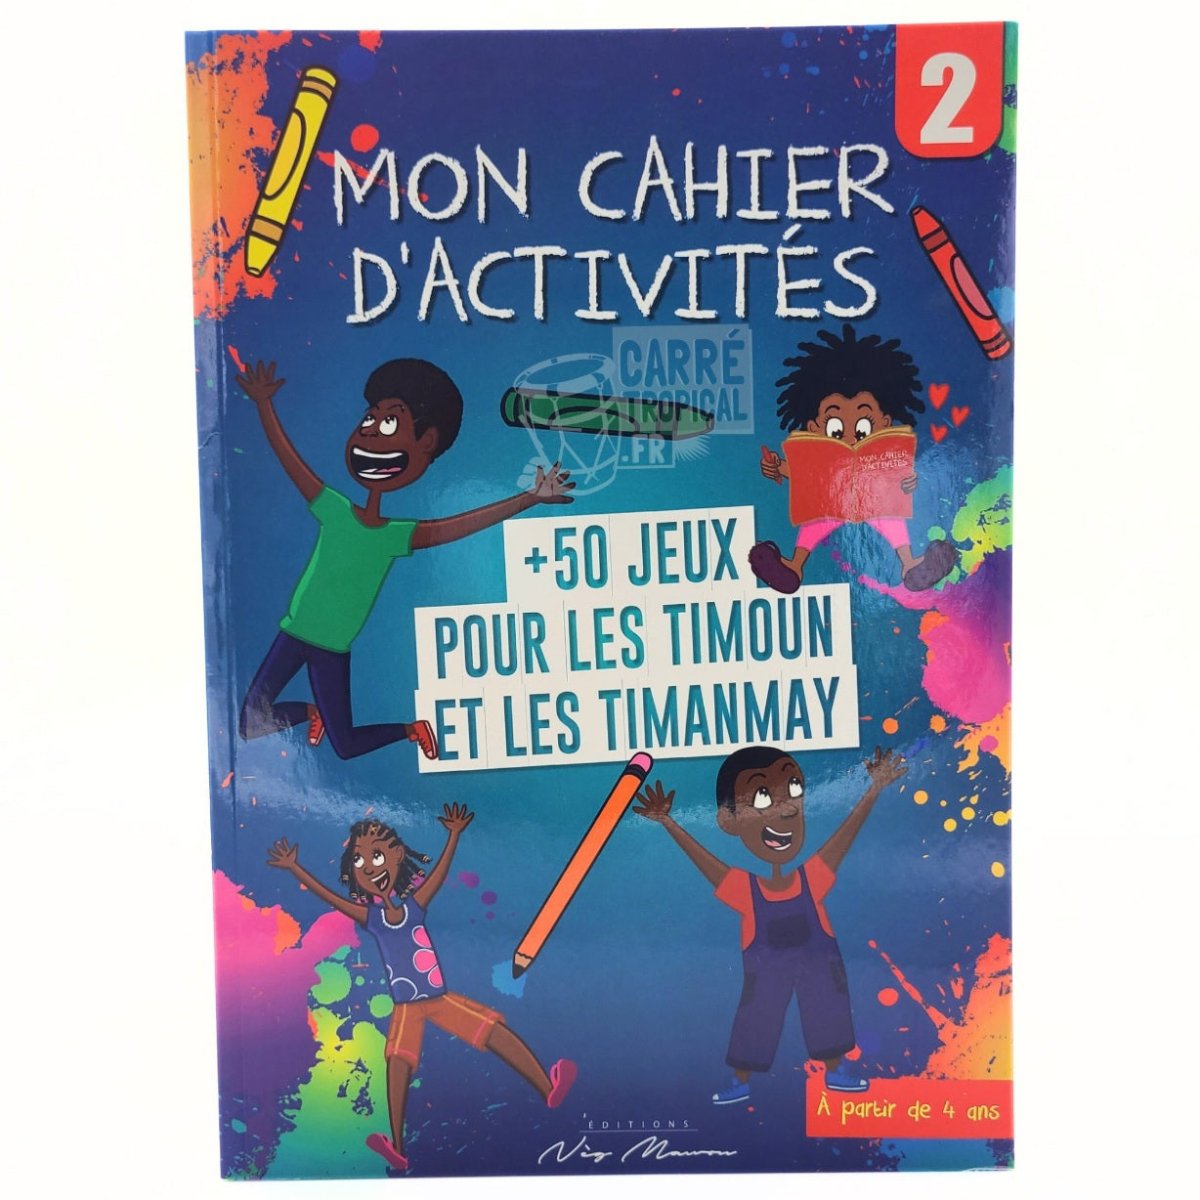 MON CAHIER D’ACTIVITÉS 📚 Jeux pour les timoun et les timanmay | Par Didyer Mannette - Carré TropicalVolume 2 (bleu)Magazines